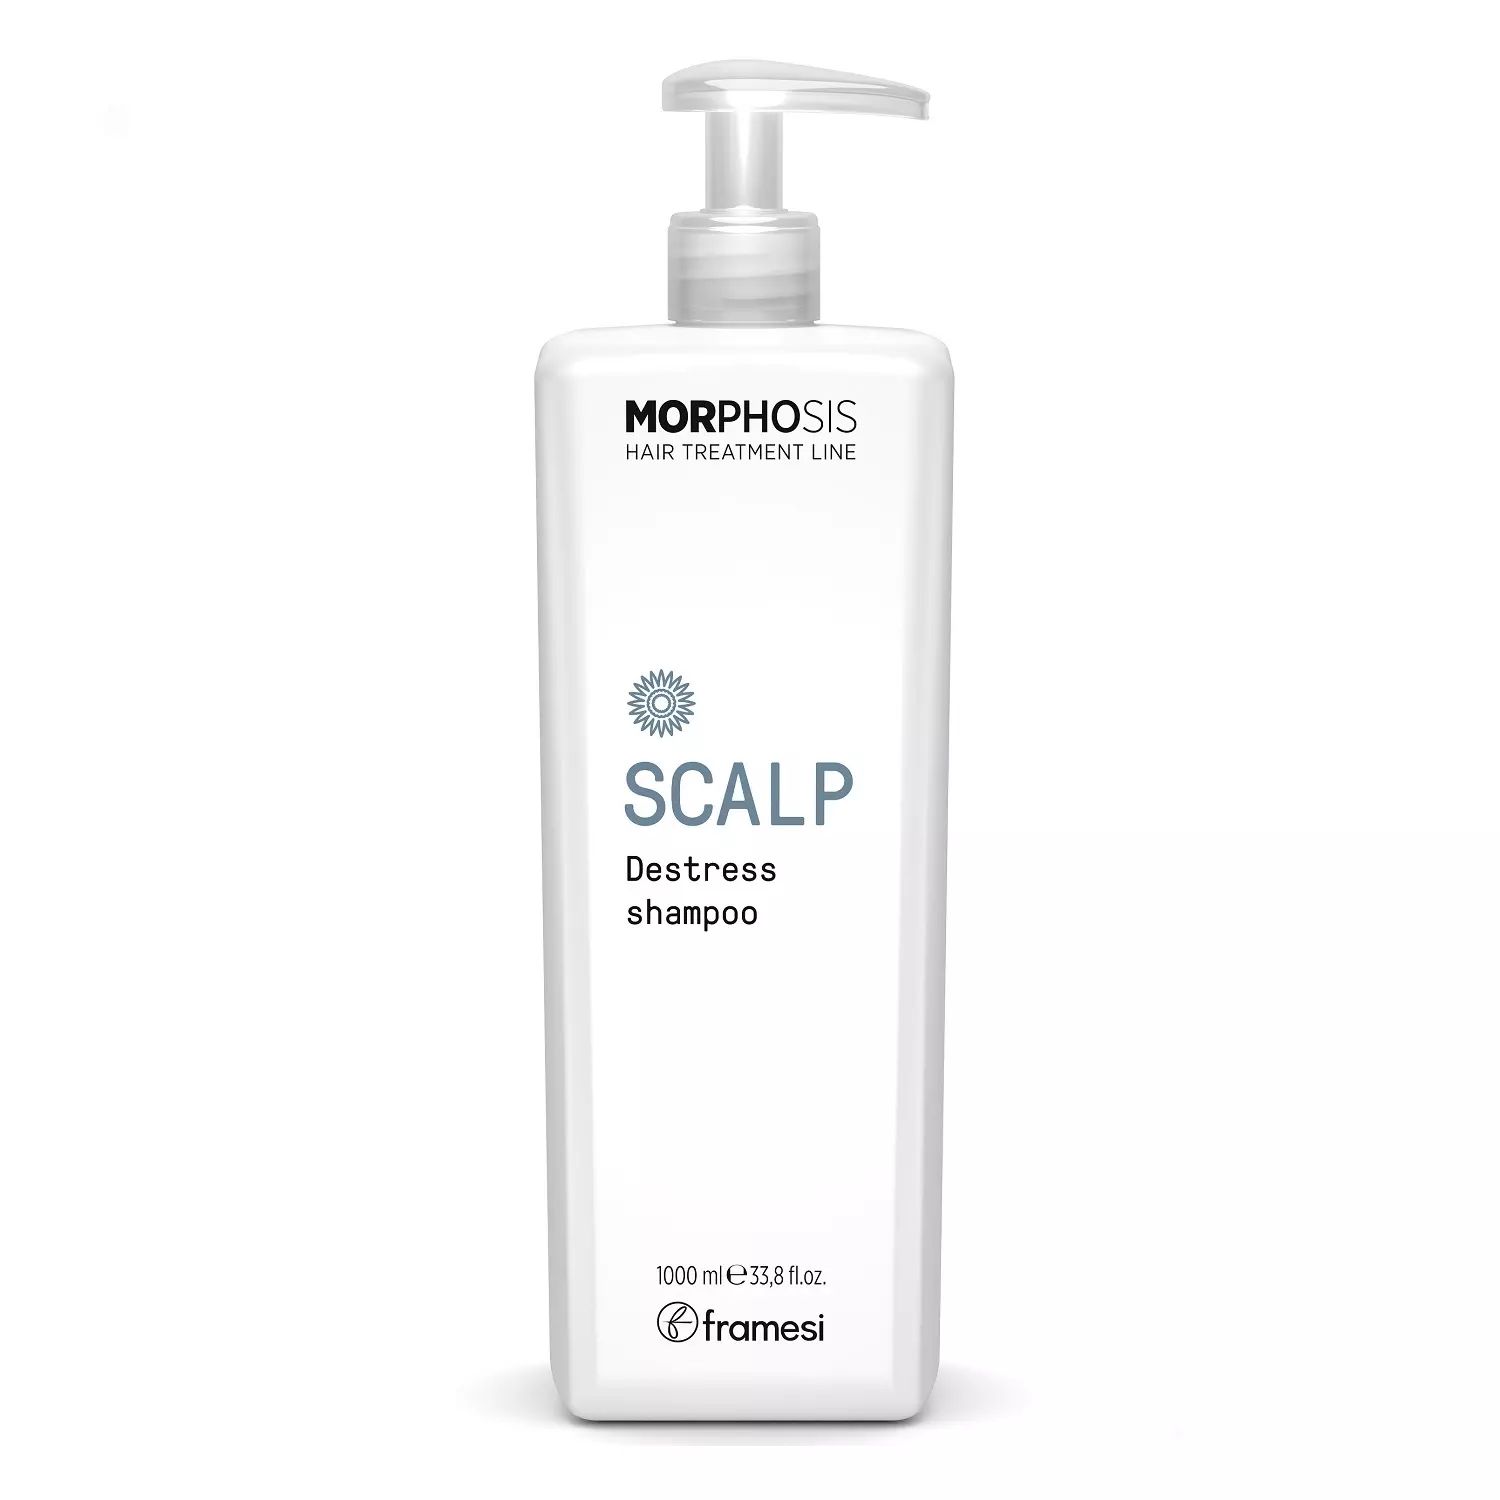 Шампунь Framesi Scalp destress shampoo для чувствительной кожи головы 1000 мл